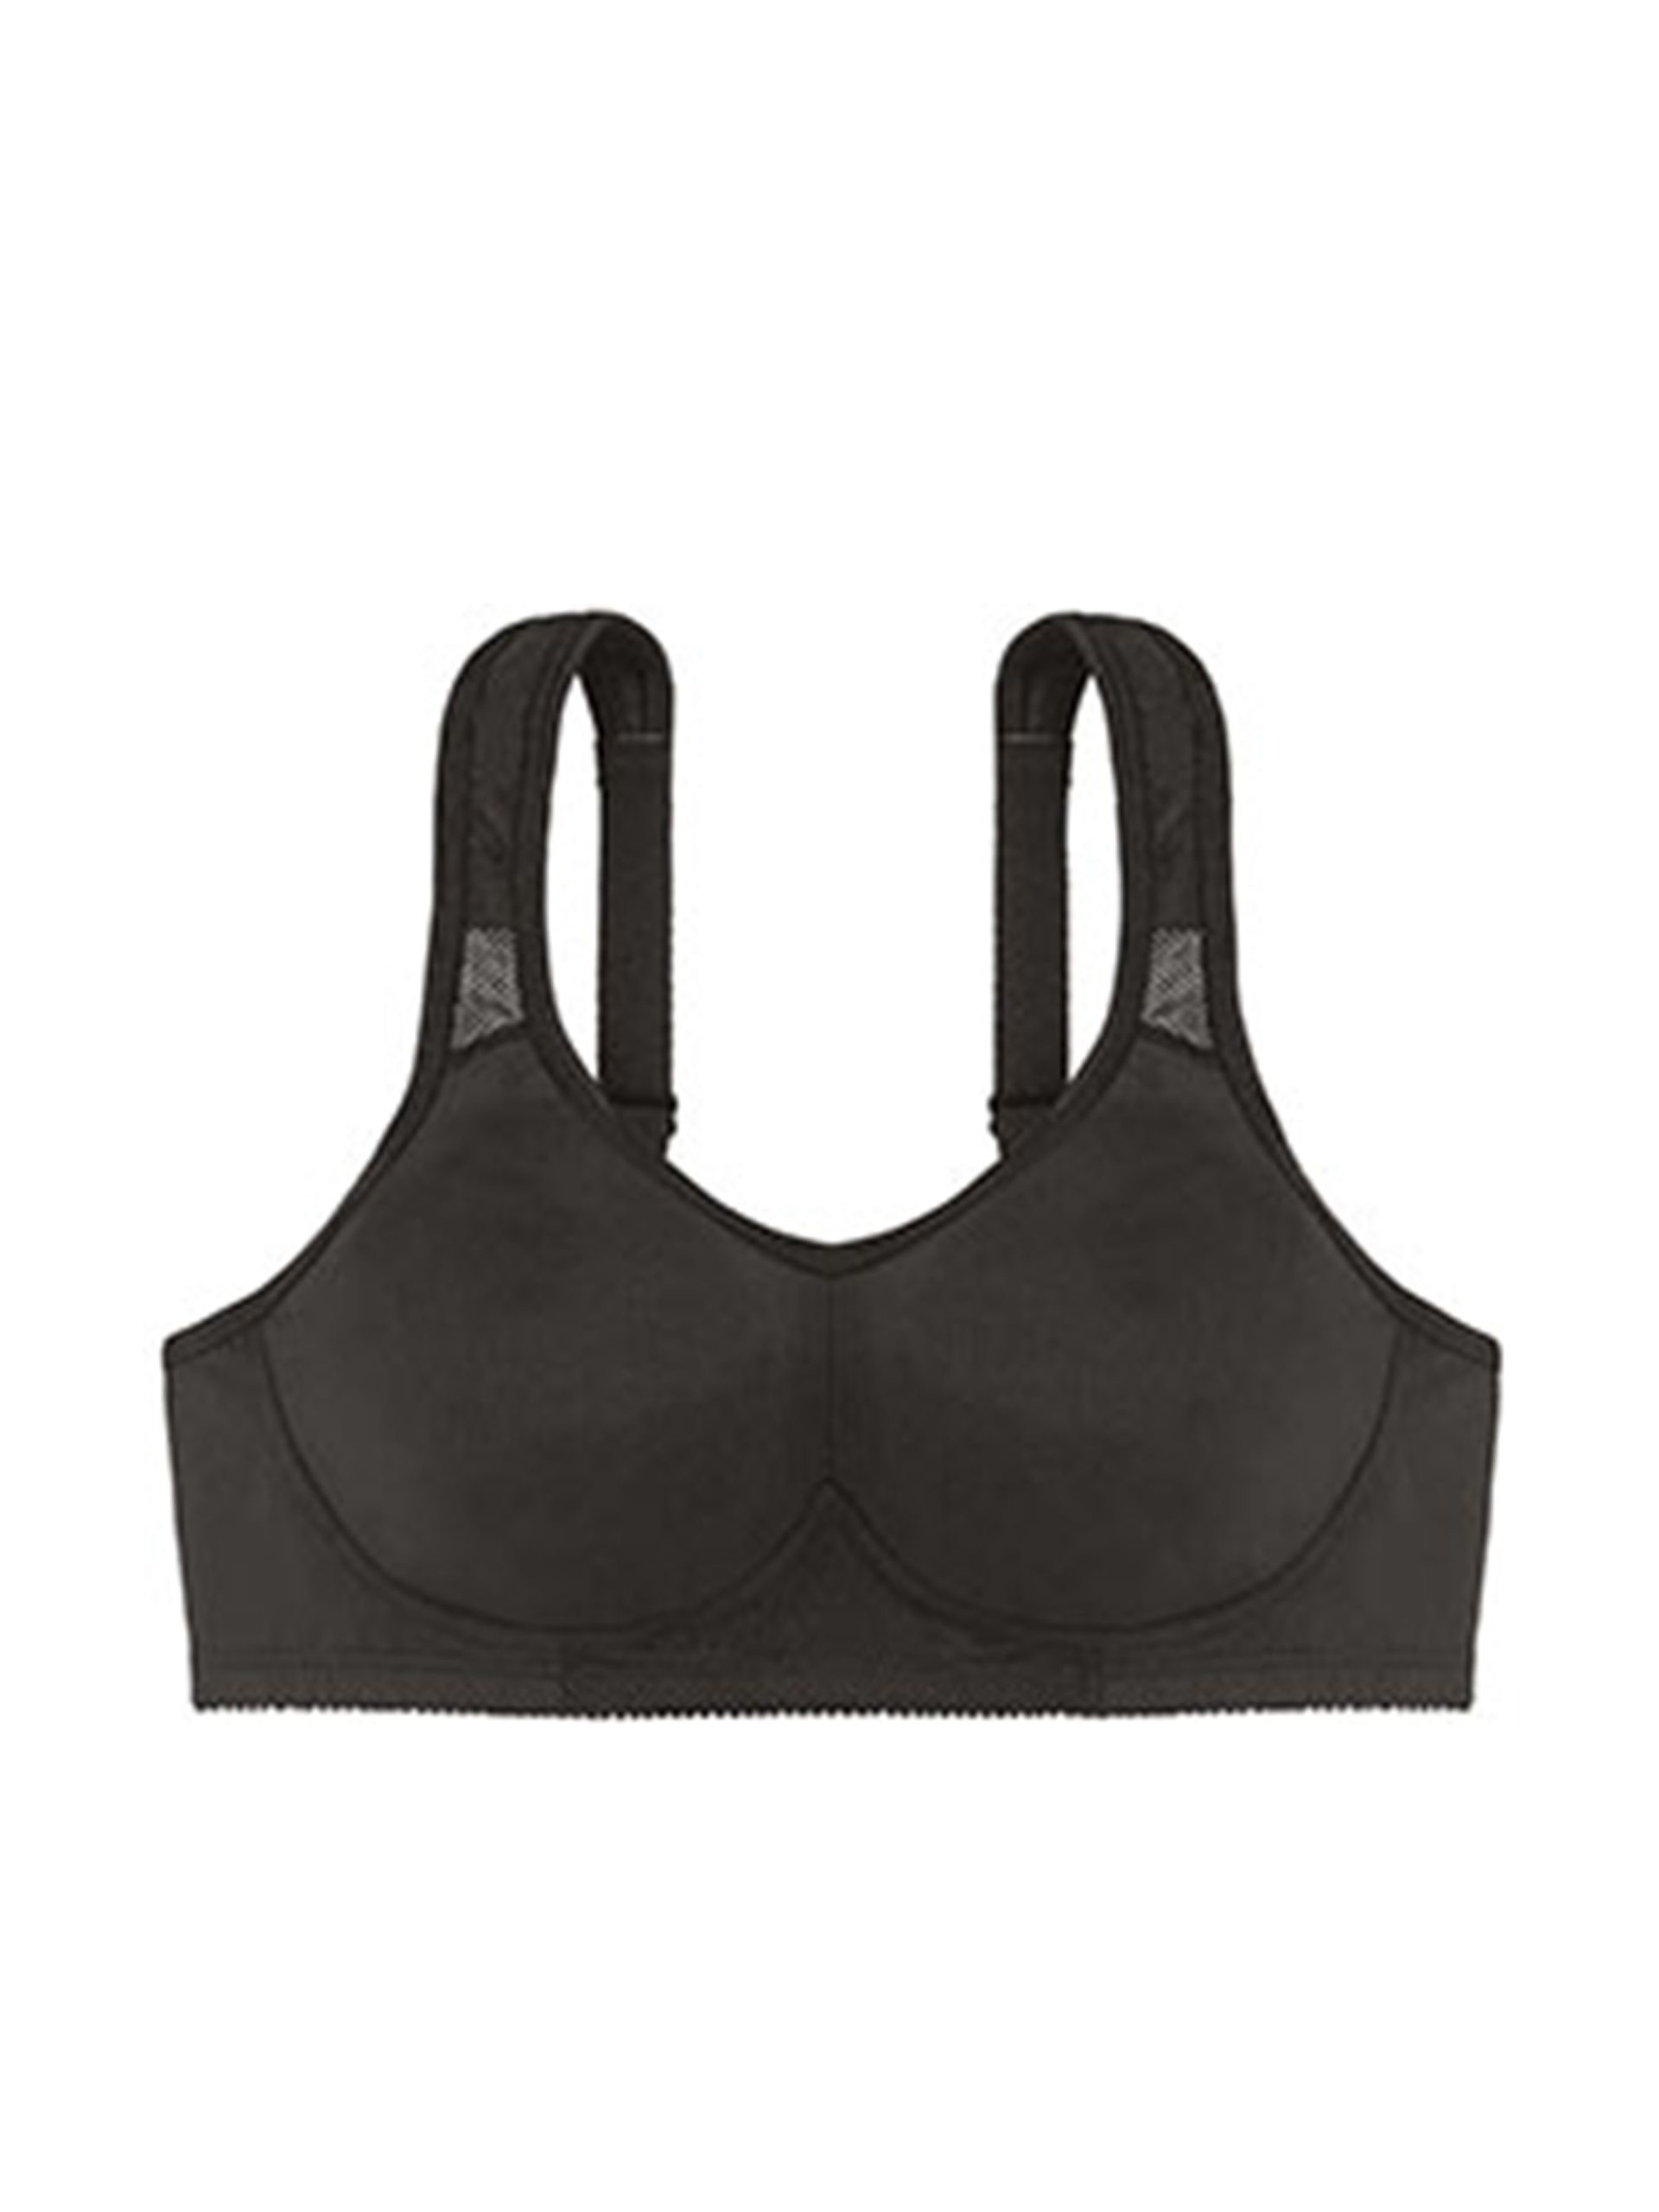 Dorina Defender micro lightly padded zip front sports bra in black